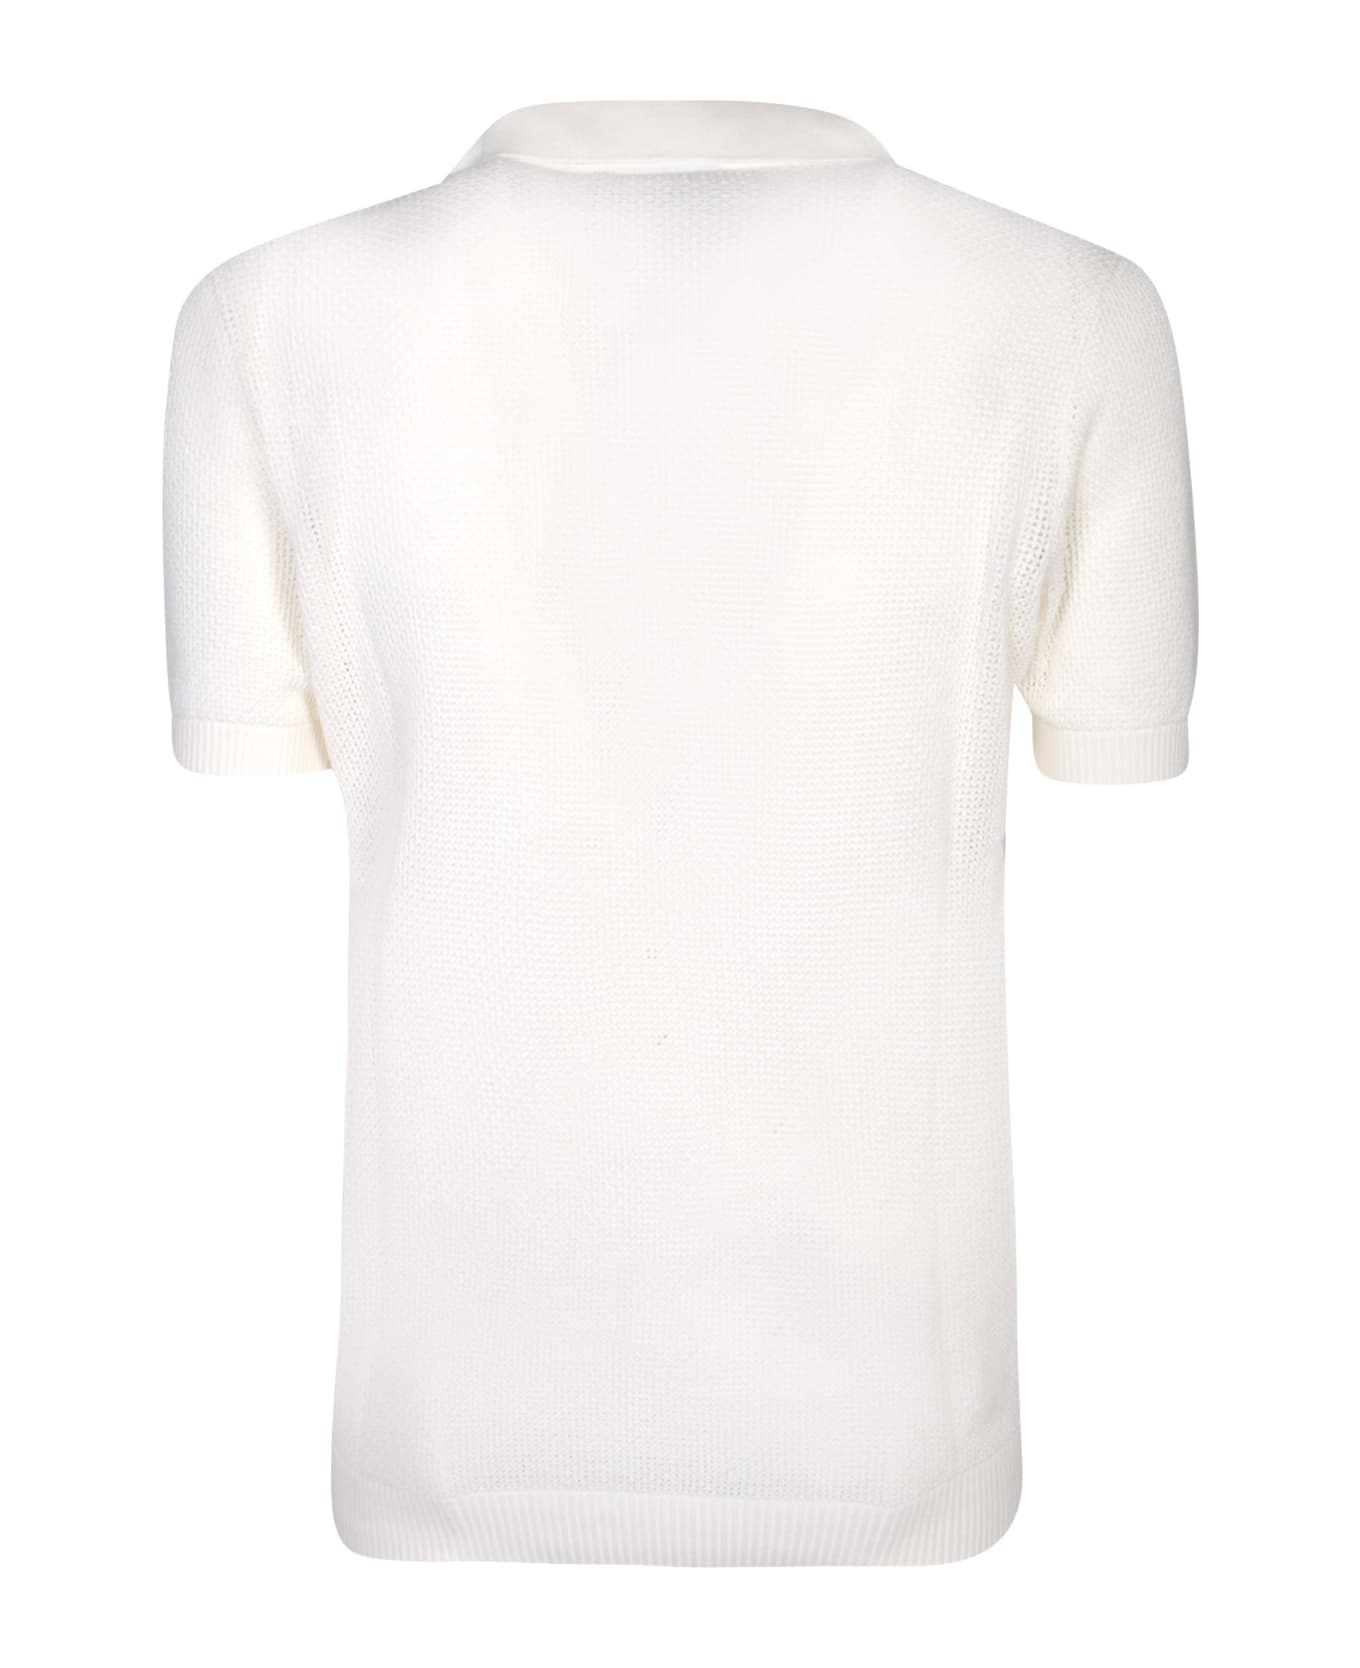 Tagliatore Crochet White Polo Shirt - White